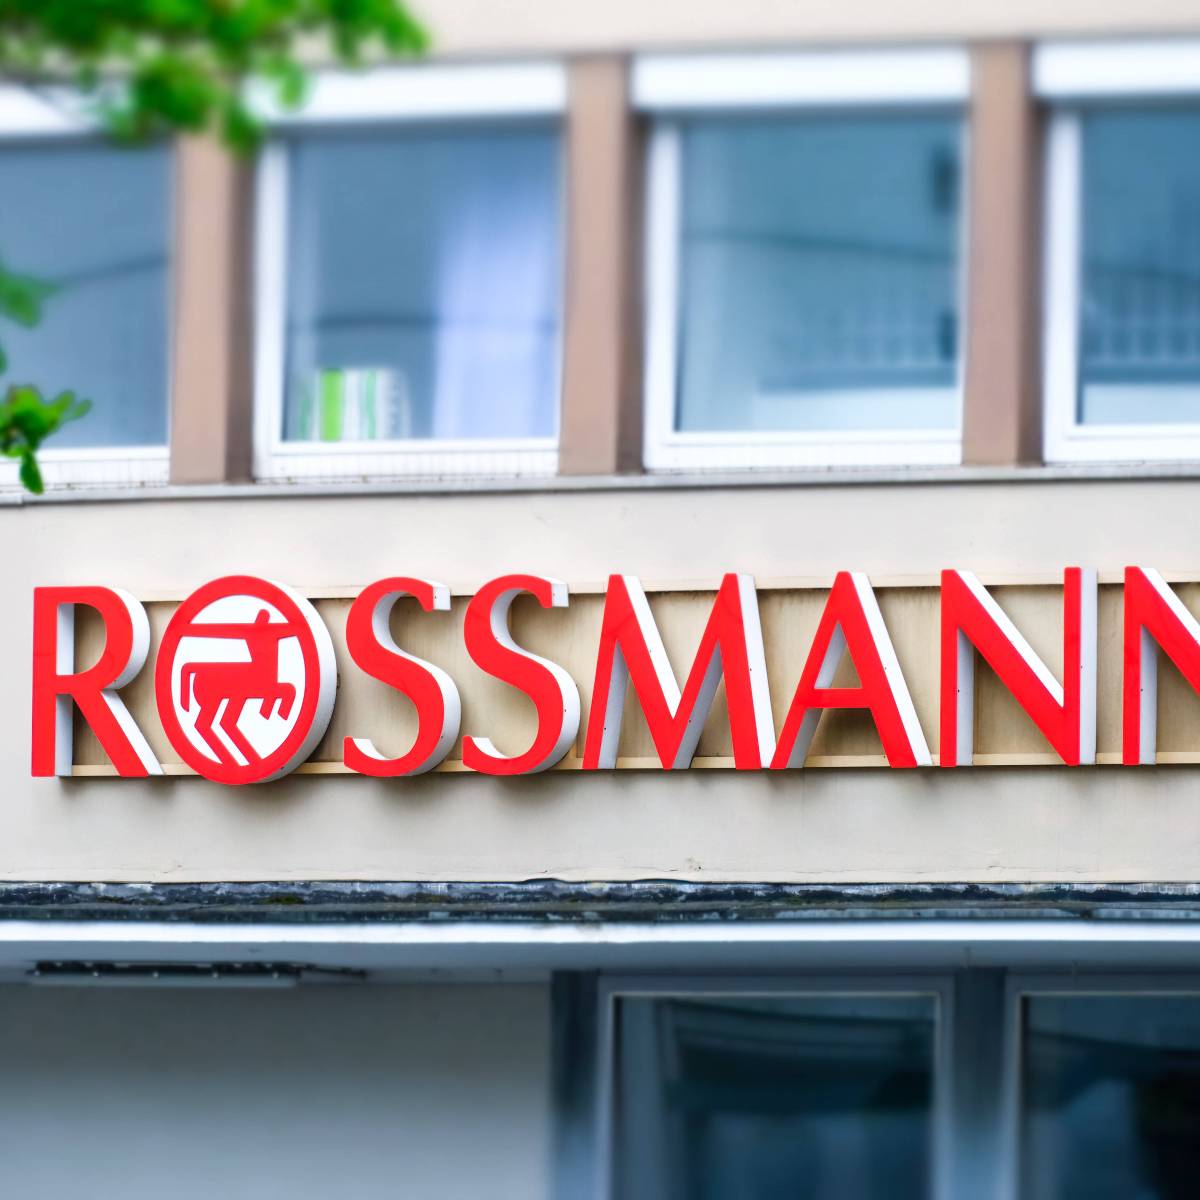 Rossmann Eigenmarken: Großes Geheimnis gelüftet?